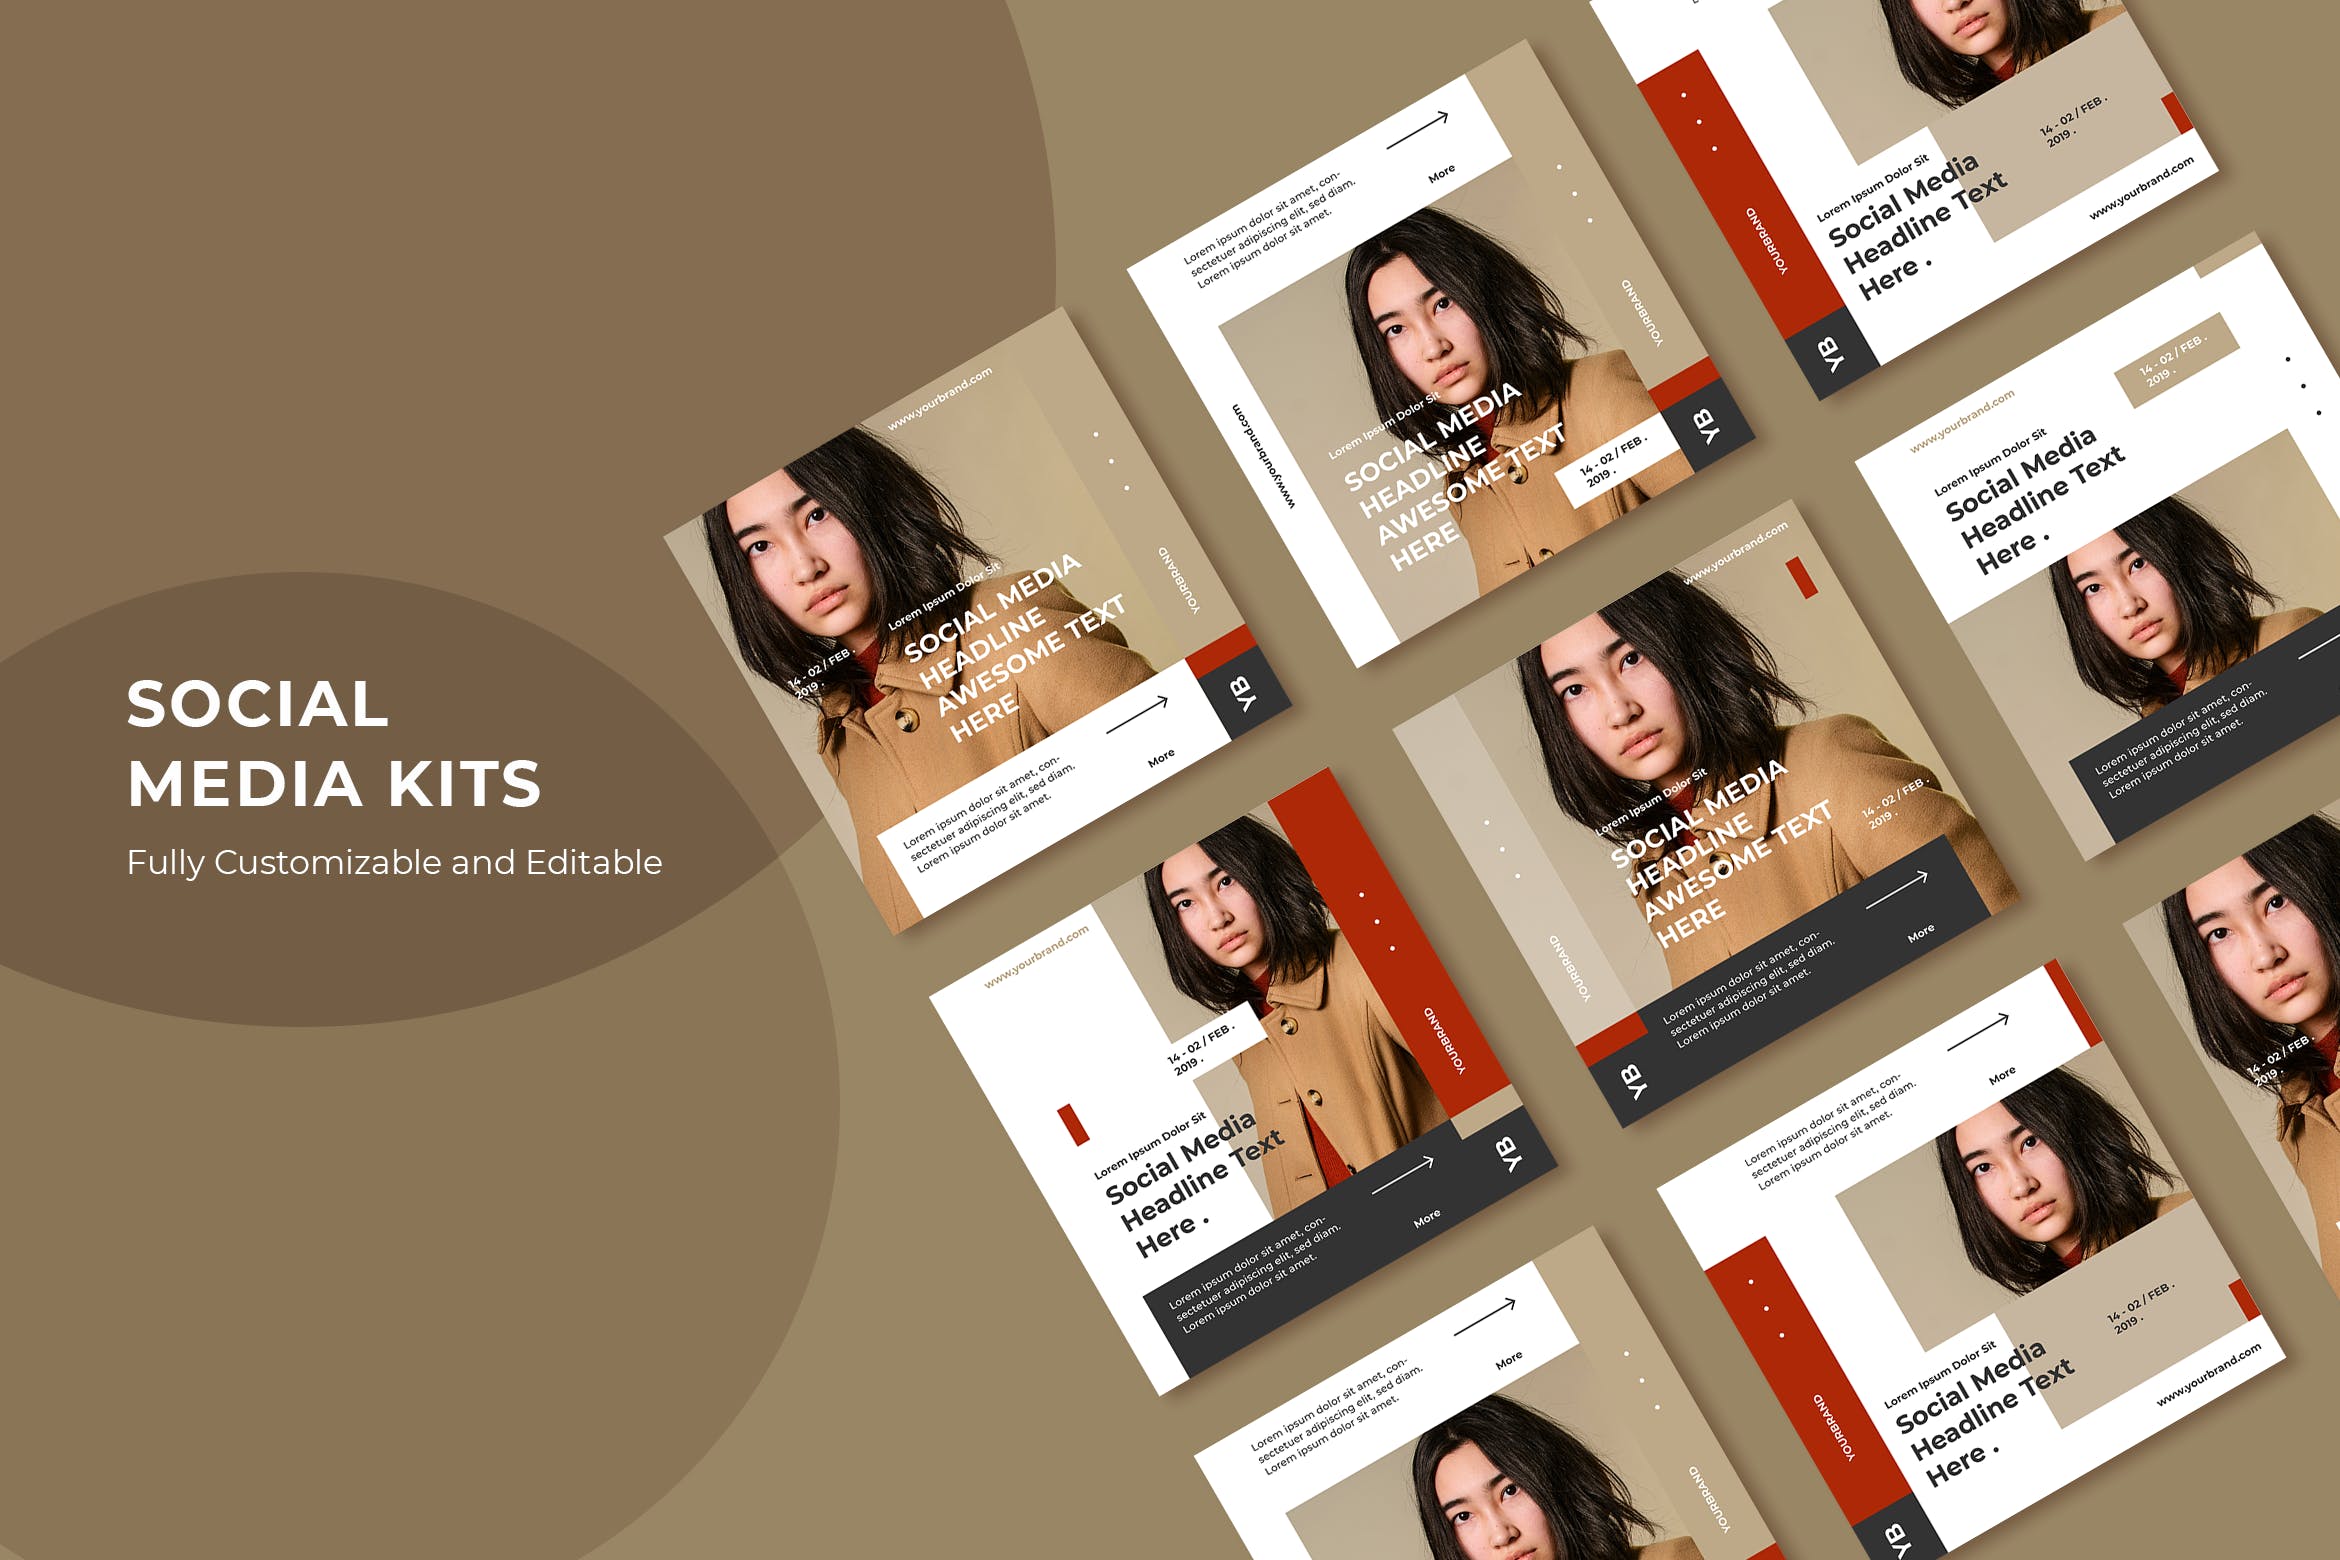 人物主题社交平台广告设计模板第一素材精选v52 SRTP – Social Media Kit.52插图